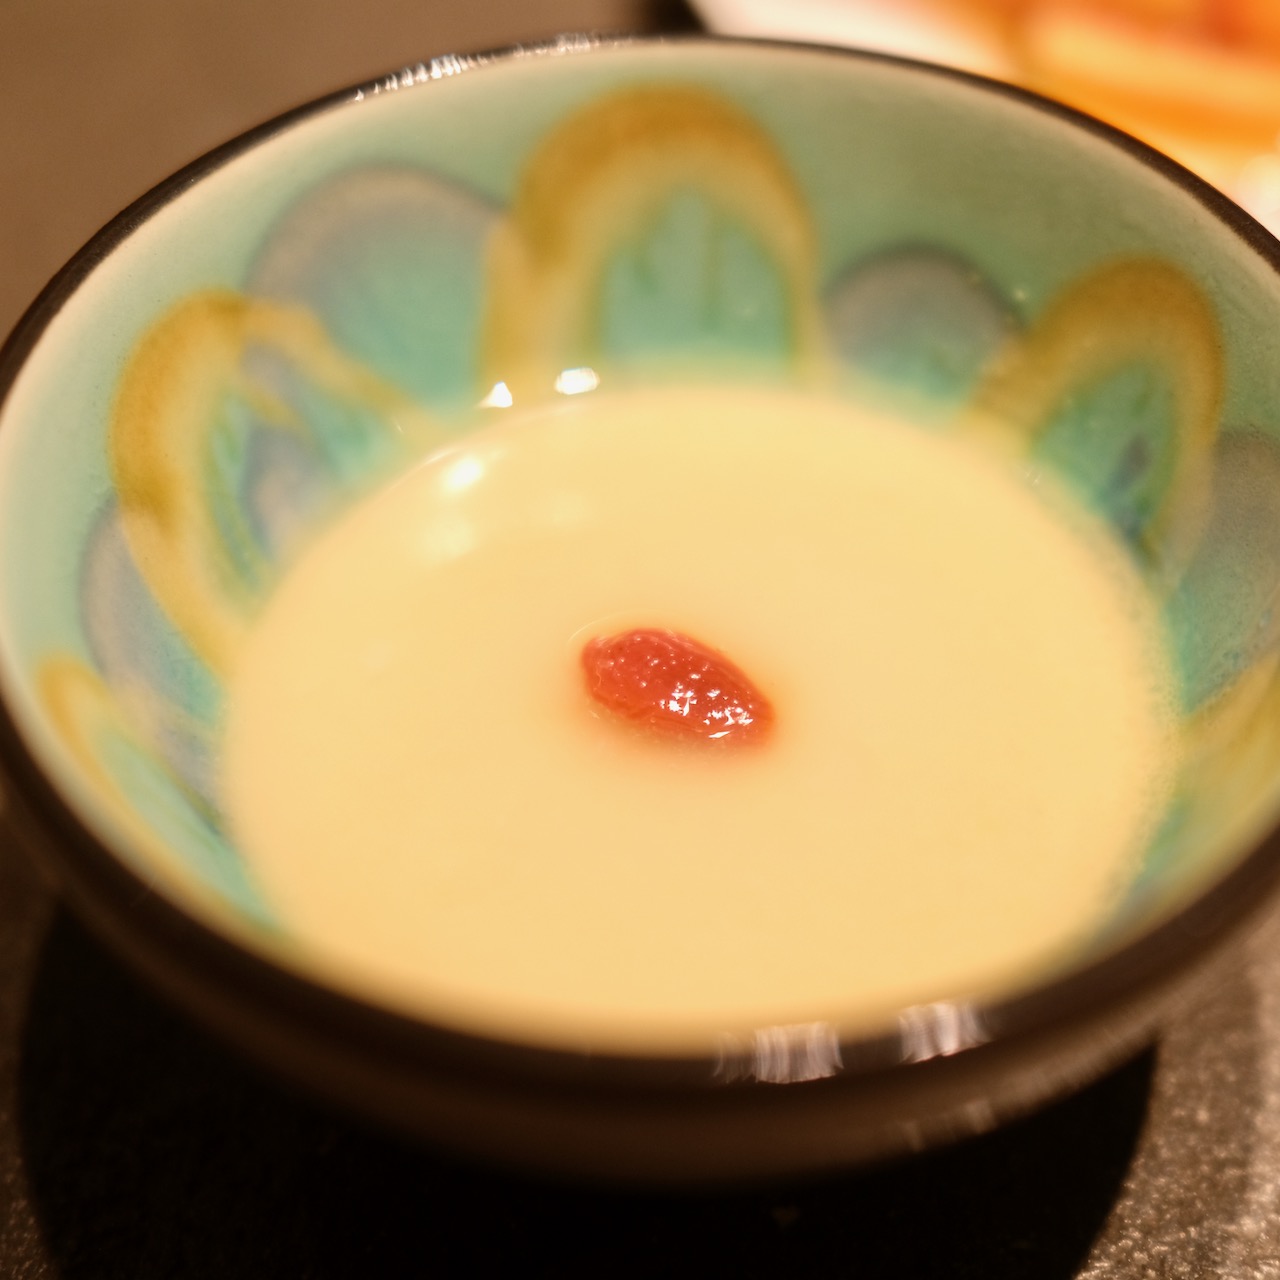 赤坂の思食 おぼしめし で食べたヒレカツサンドと秋の食材の話 アカヌマカズヤのグルメブログ